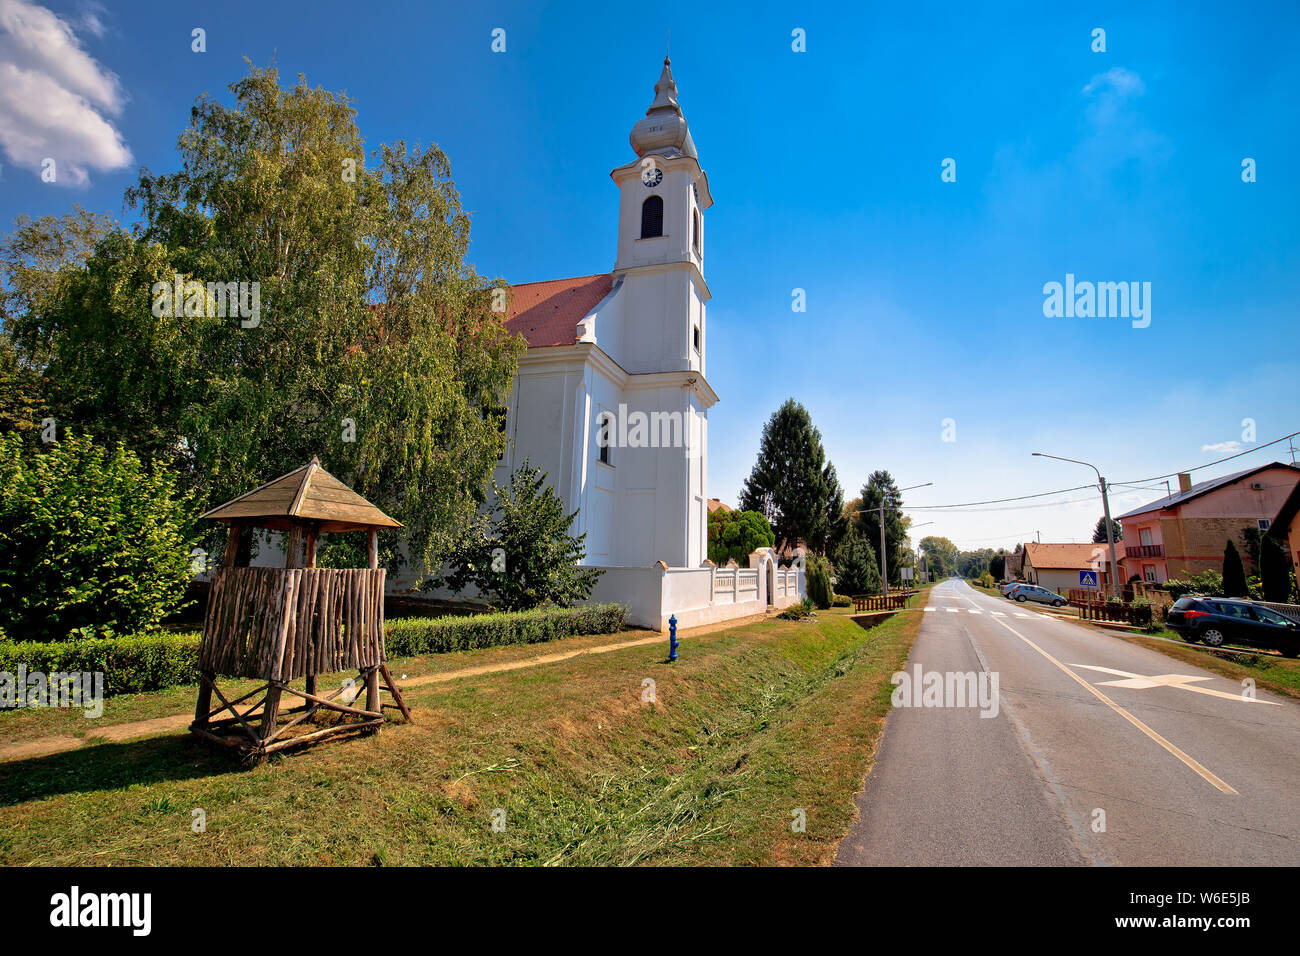 Street View di Karanac chiesa e architettura storica, etno villaggio in Baranja regione della Croazia Foto Stock